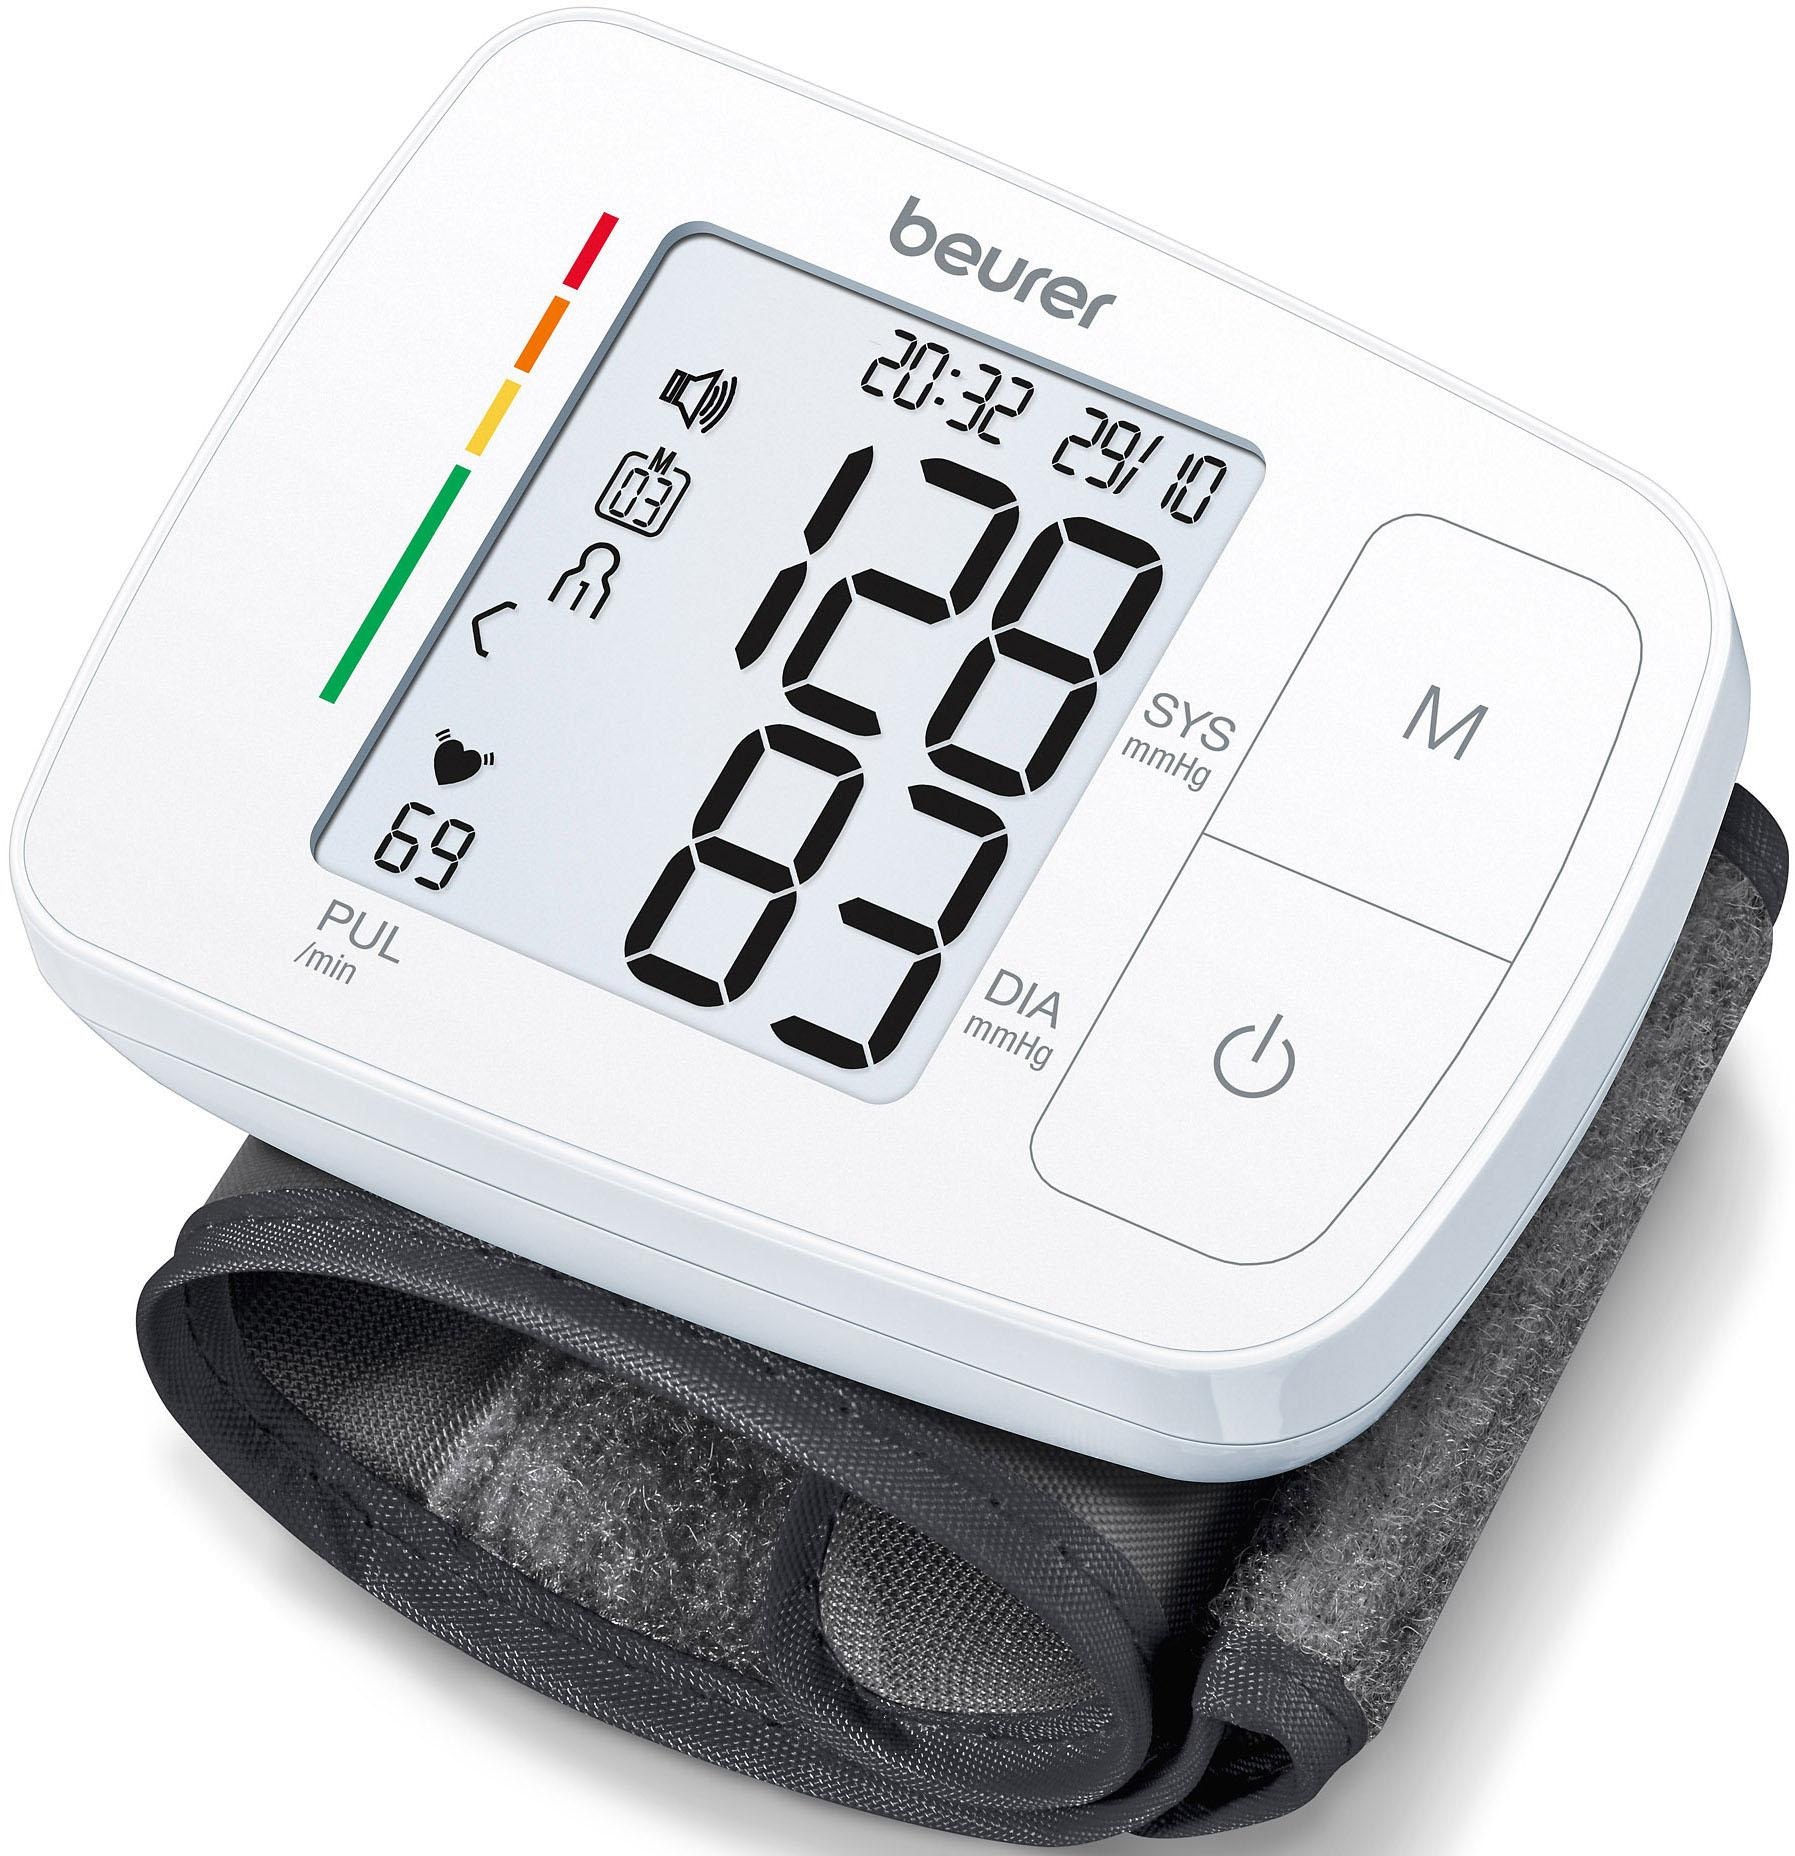 Handgelenk-Blutdruckmessgerät »BC 21«, mit Sprachausgabe in fünf Sprachen